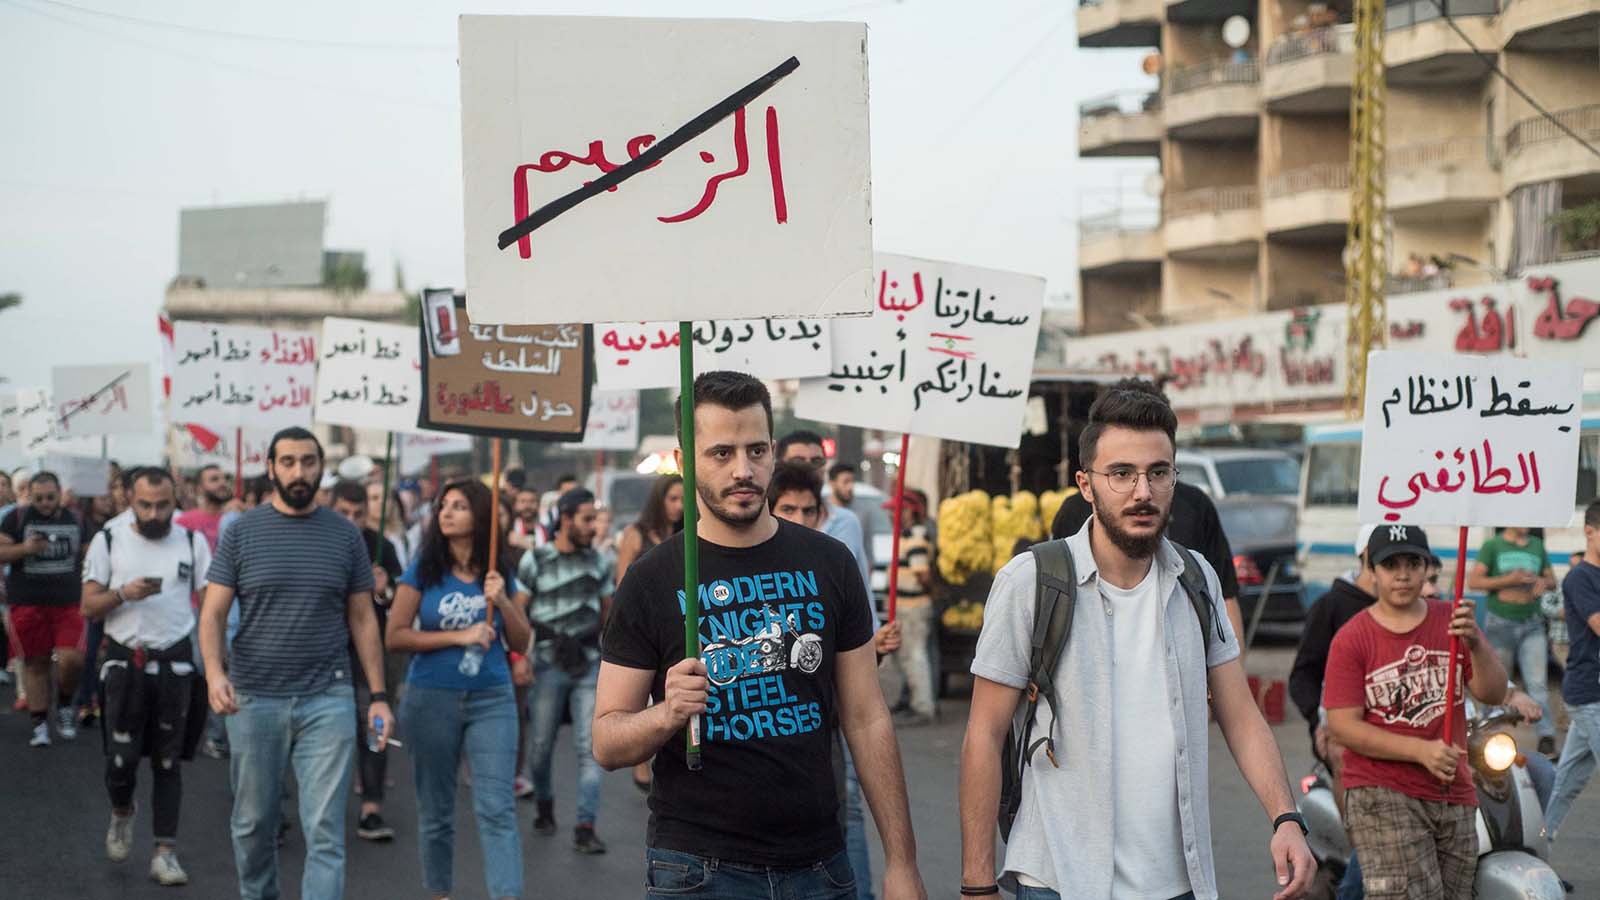 تهشيم السنّية السياسية: ثورة طرابلس هي الجواب لا الزعماء